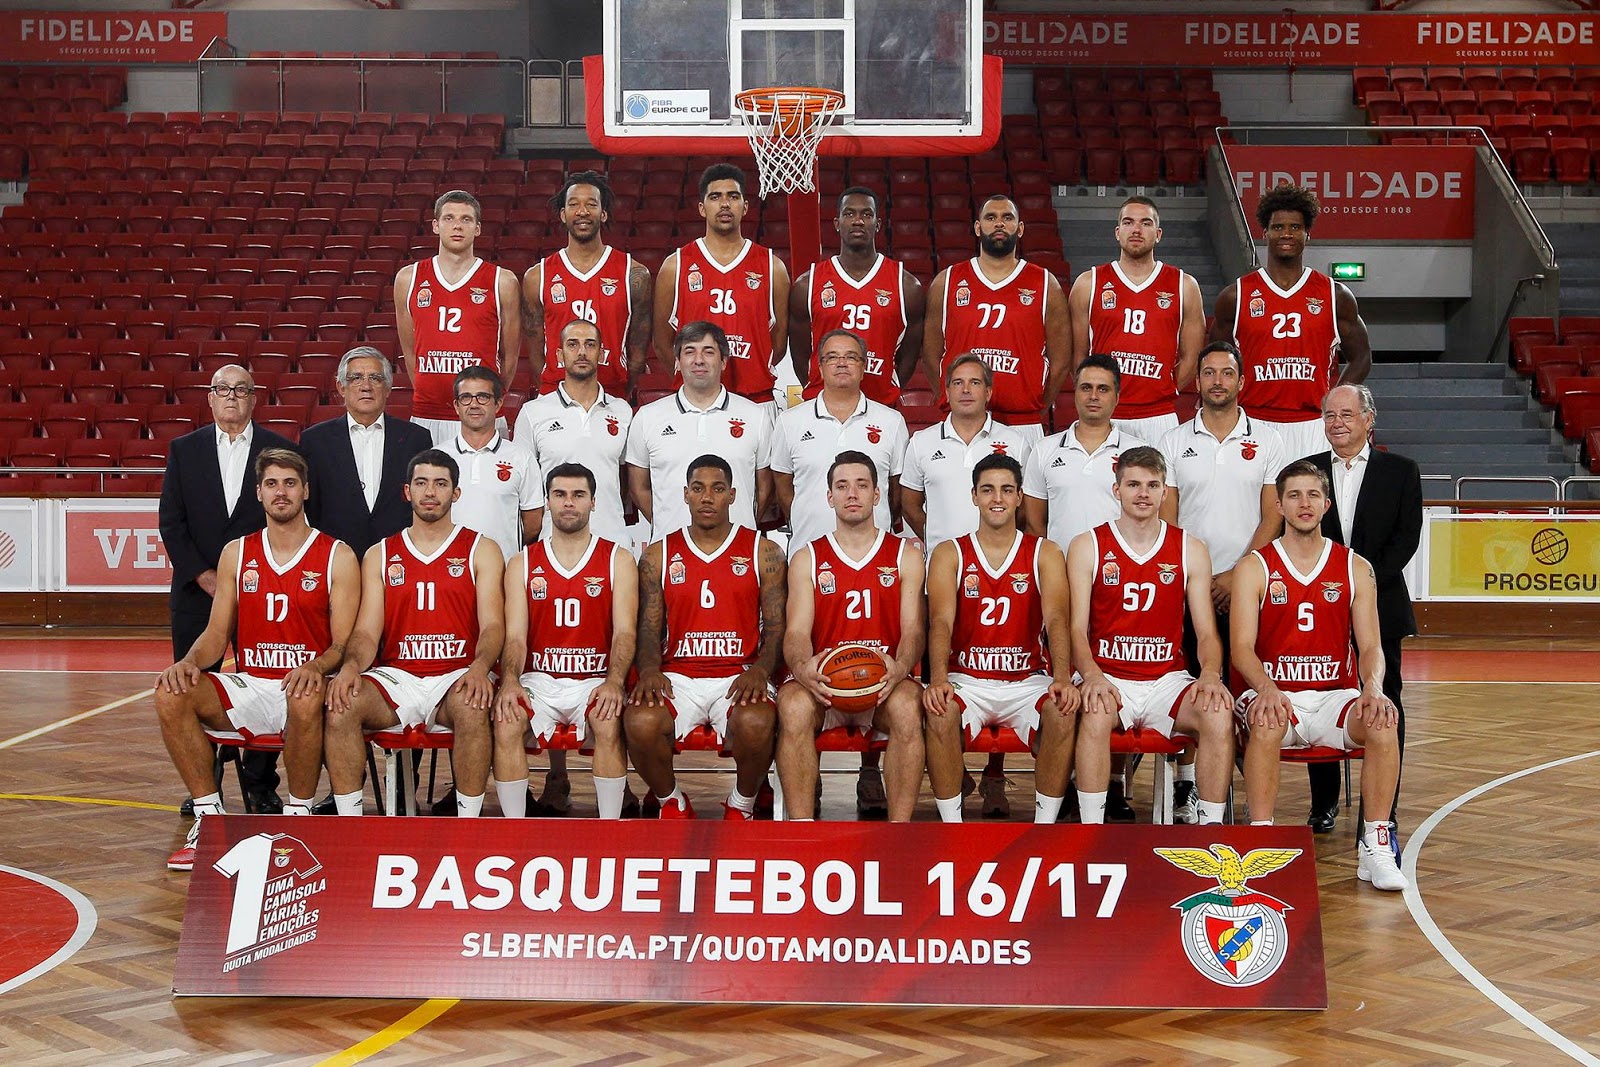 Benfica Eclético: Basquetebol SL Benfica - 2016/2017